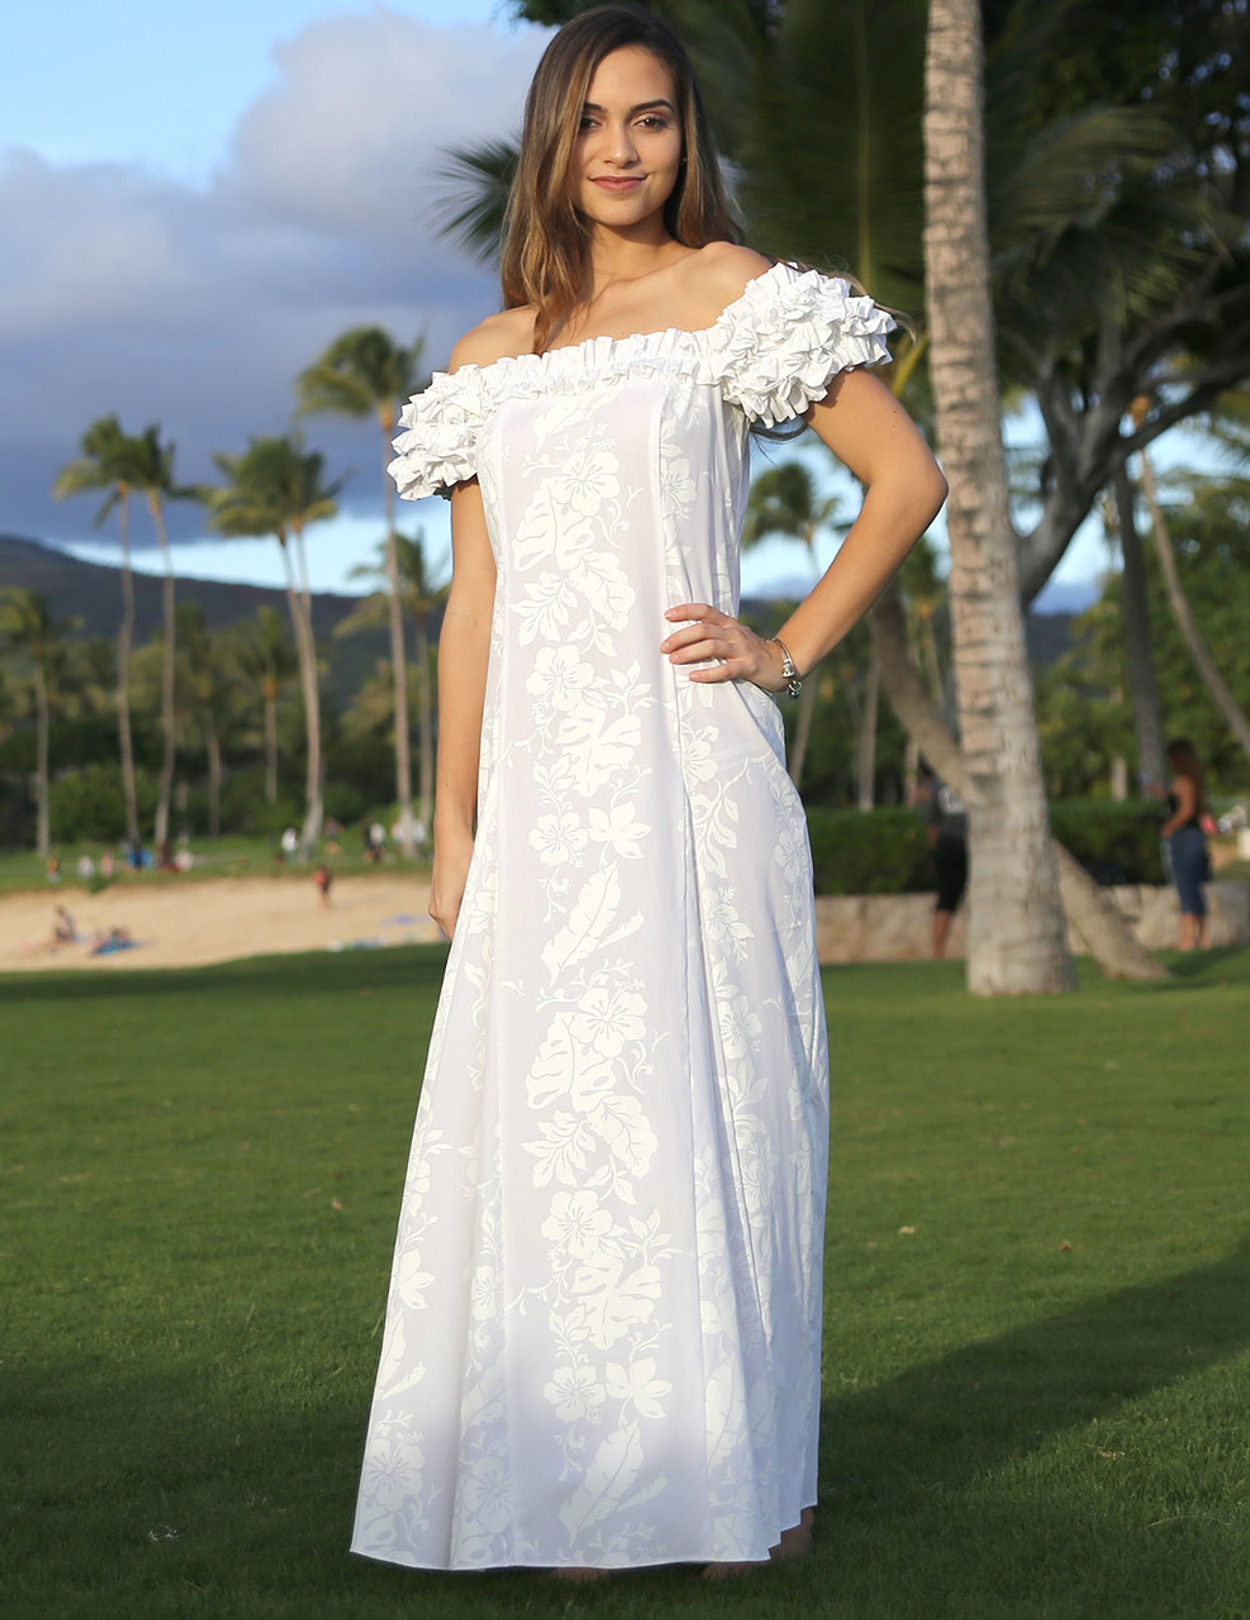  Hawaiian  Leis White Wedding  Ruffled Dress  Hawaiian  